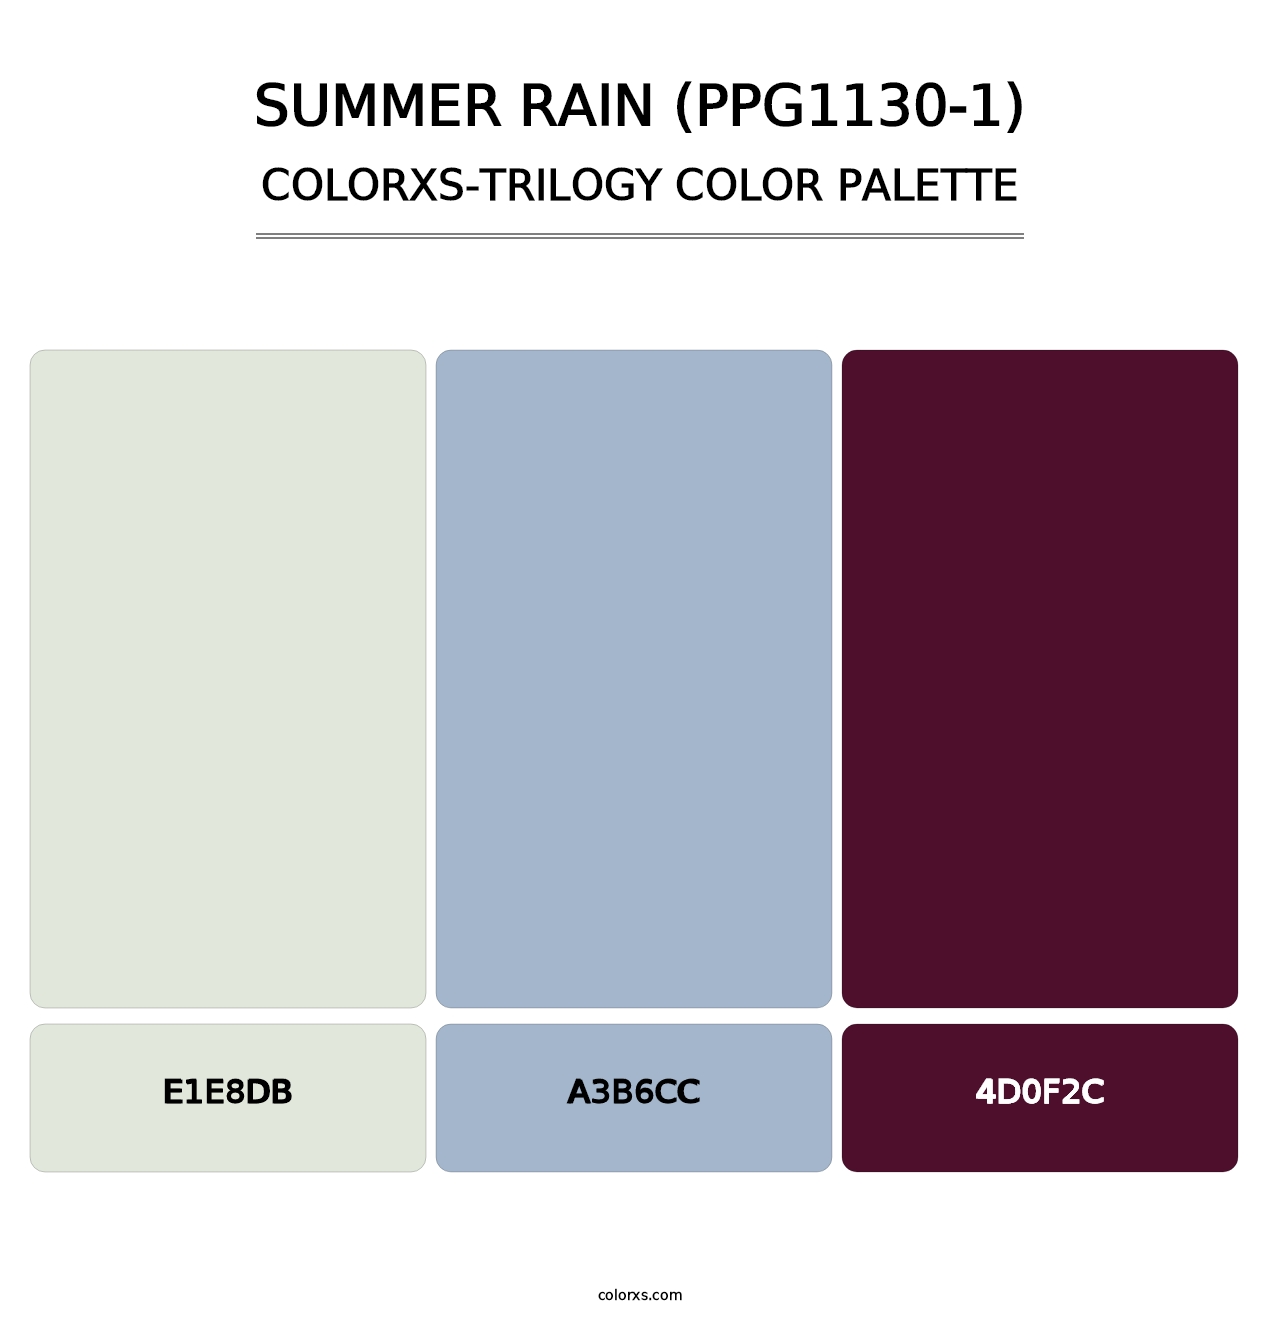 Summer Rain (PPG1130-1) - Colorxs Trilogy Palette